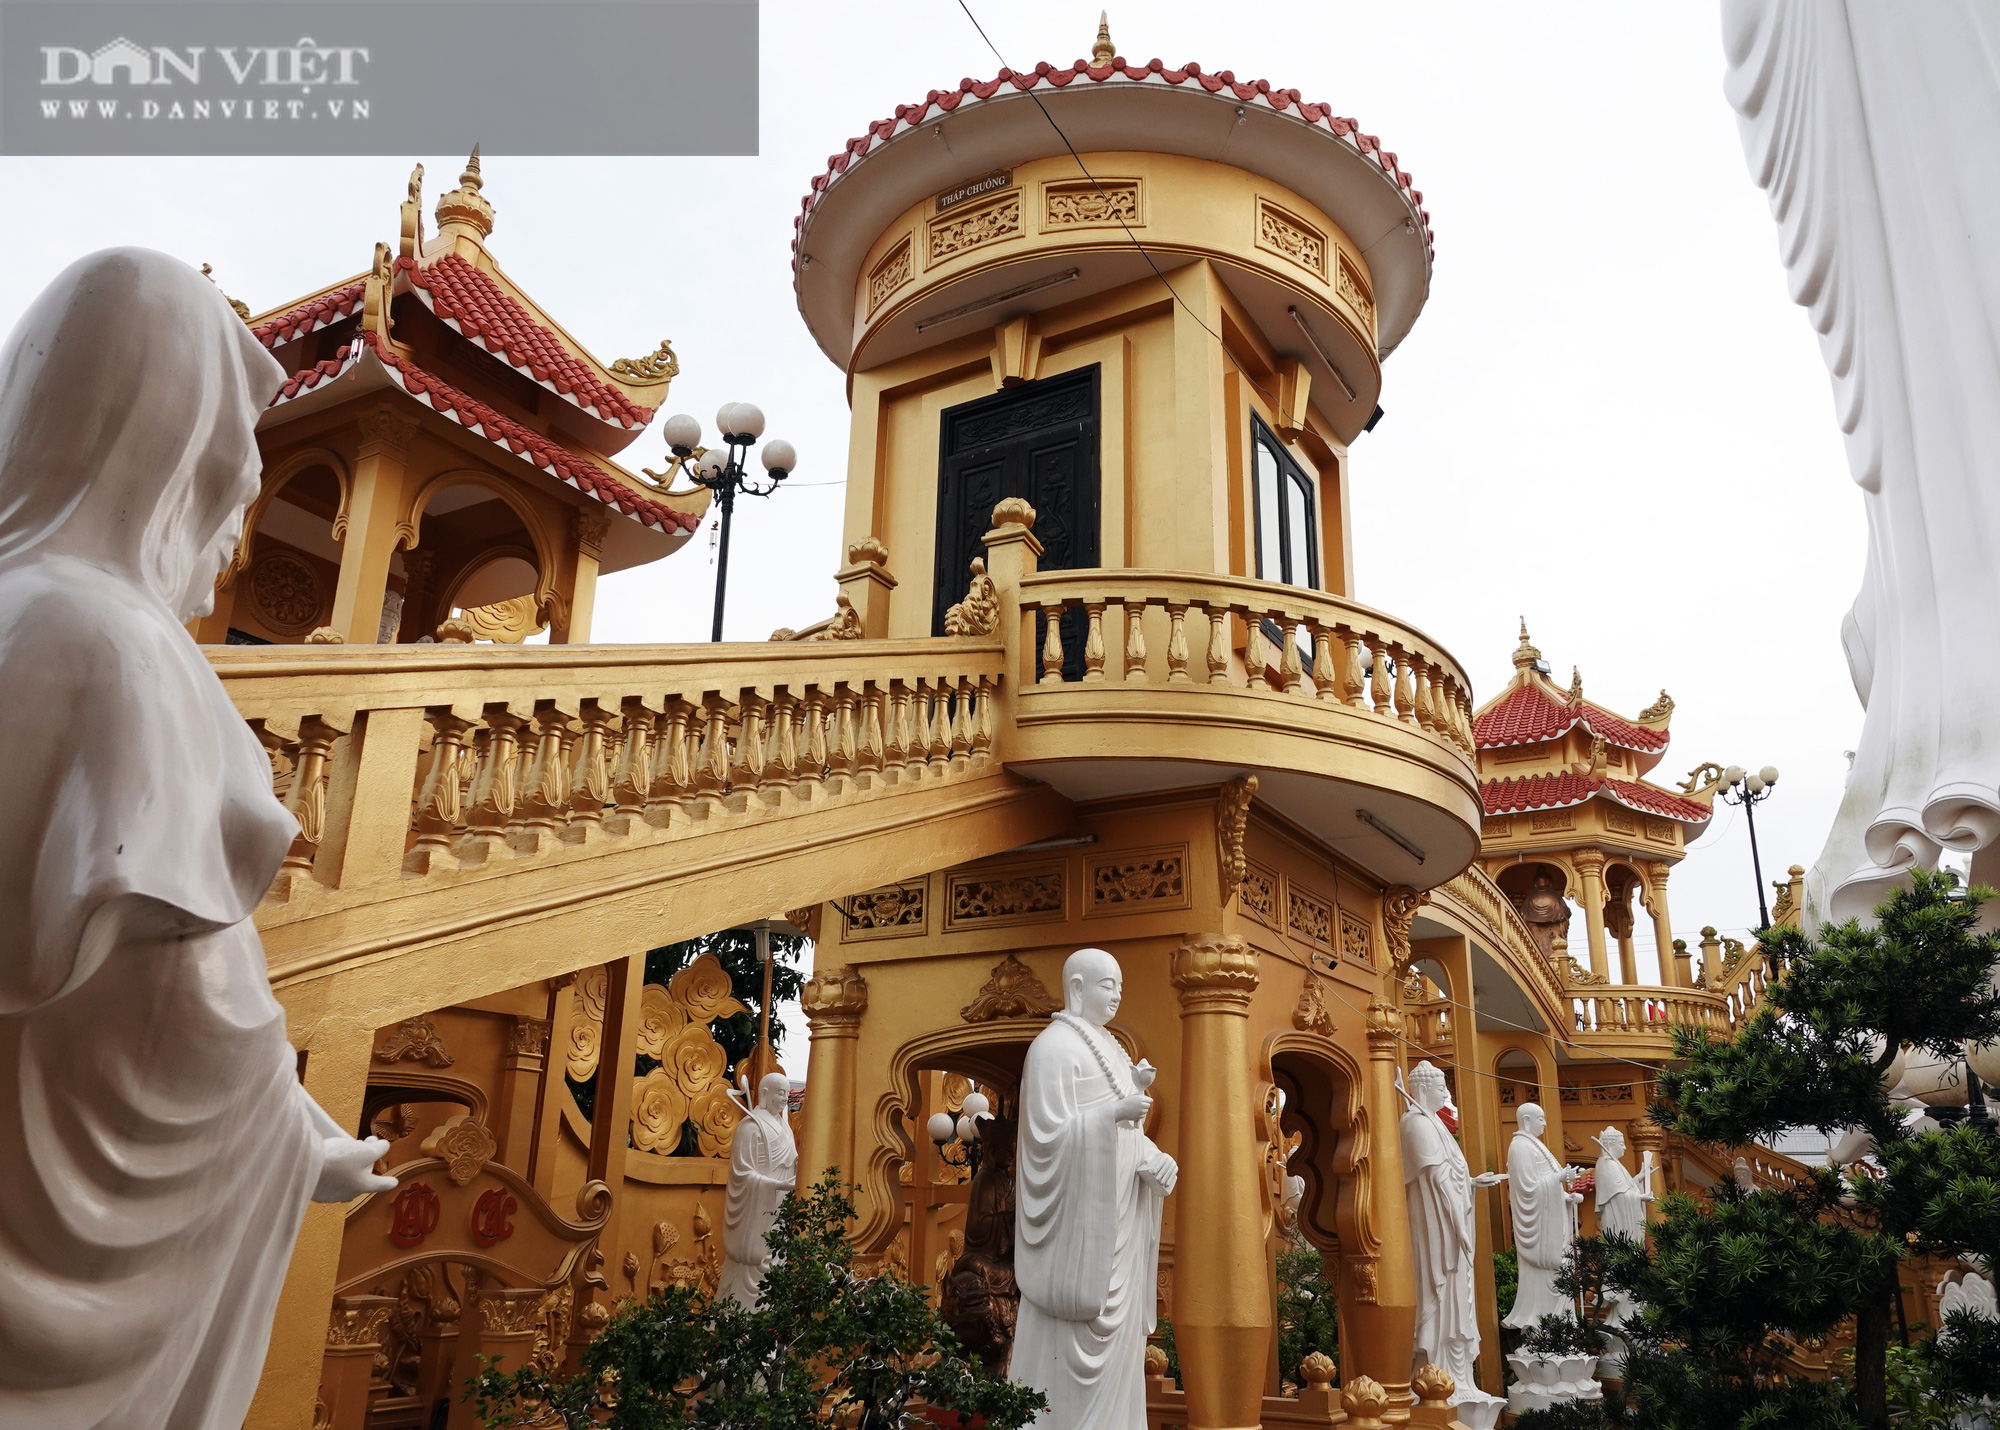 Ngôi chùa ở Cù Lao Giêng với quần thể tượng Phật đạt kỷ lục Việt Nam có gì đặc biệt? - Ảnh 10.